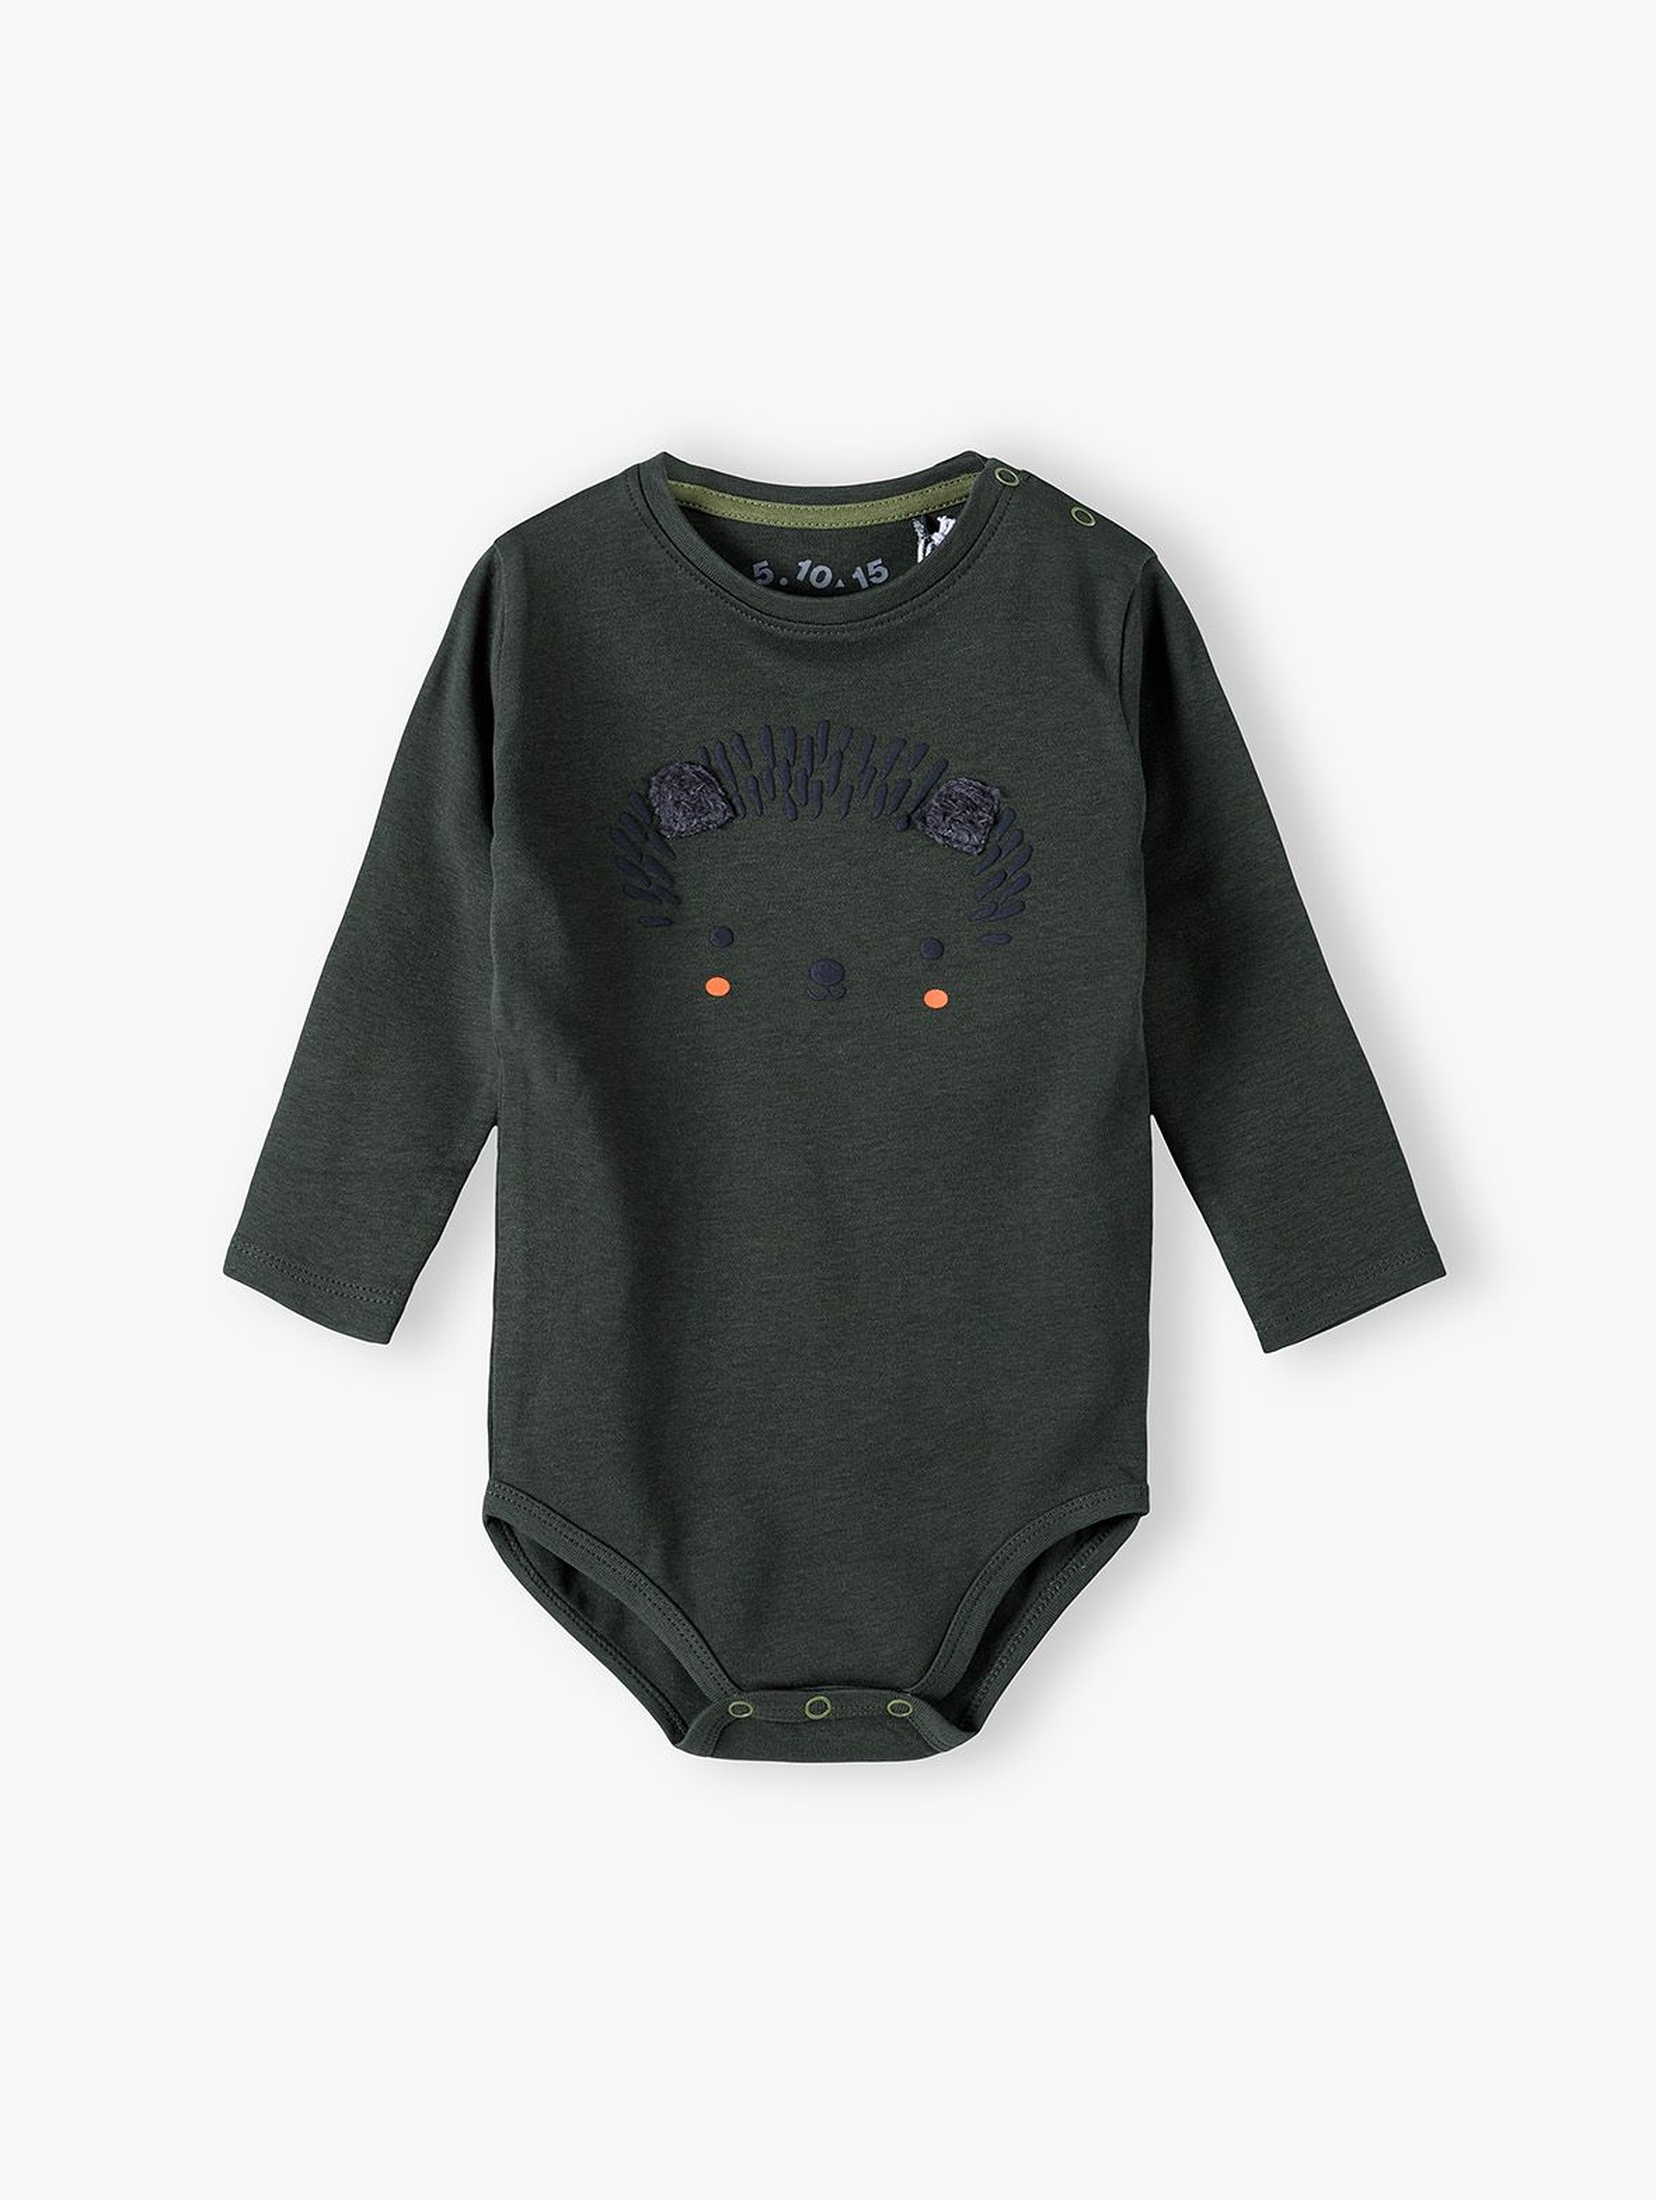 Bawełniane body niemowlęce z jeżykiem na długi rękaw - ciemnozielone